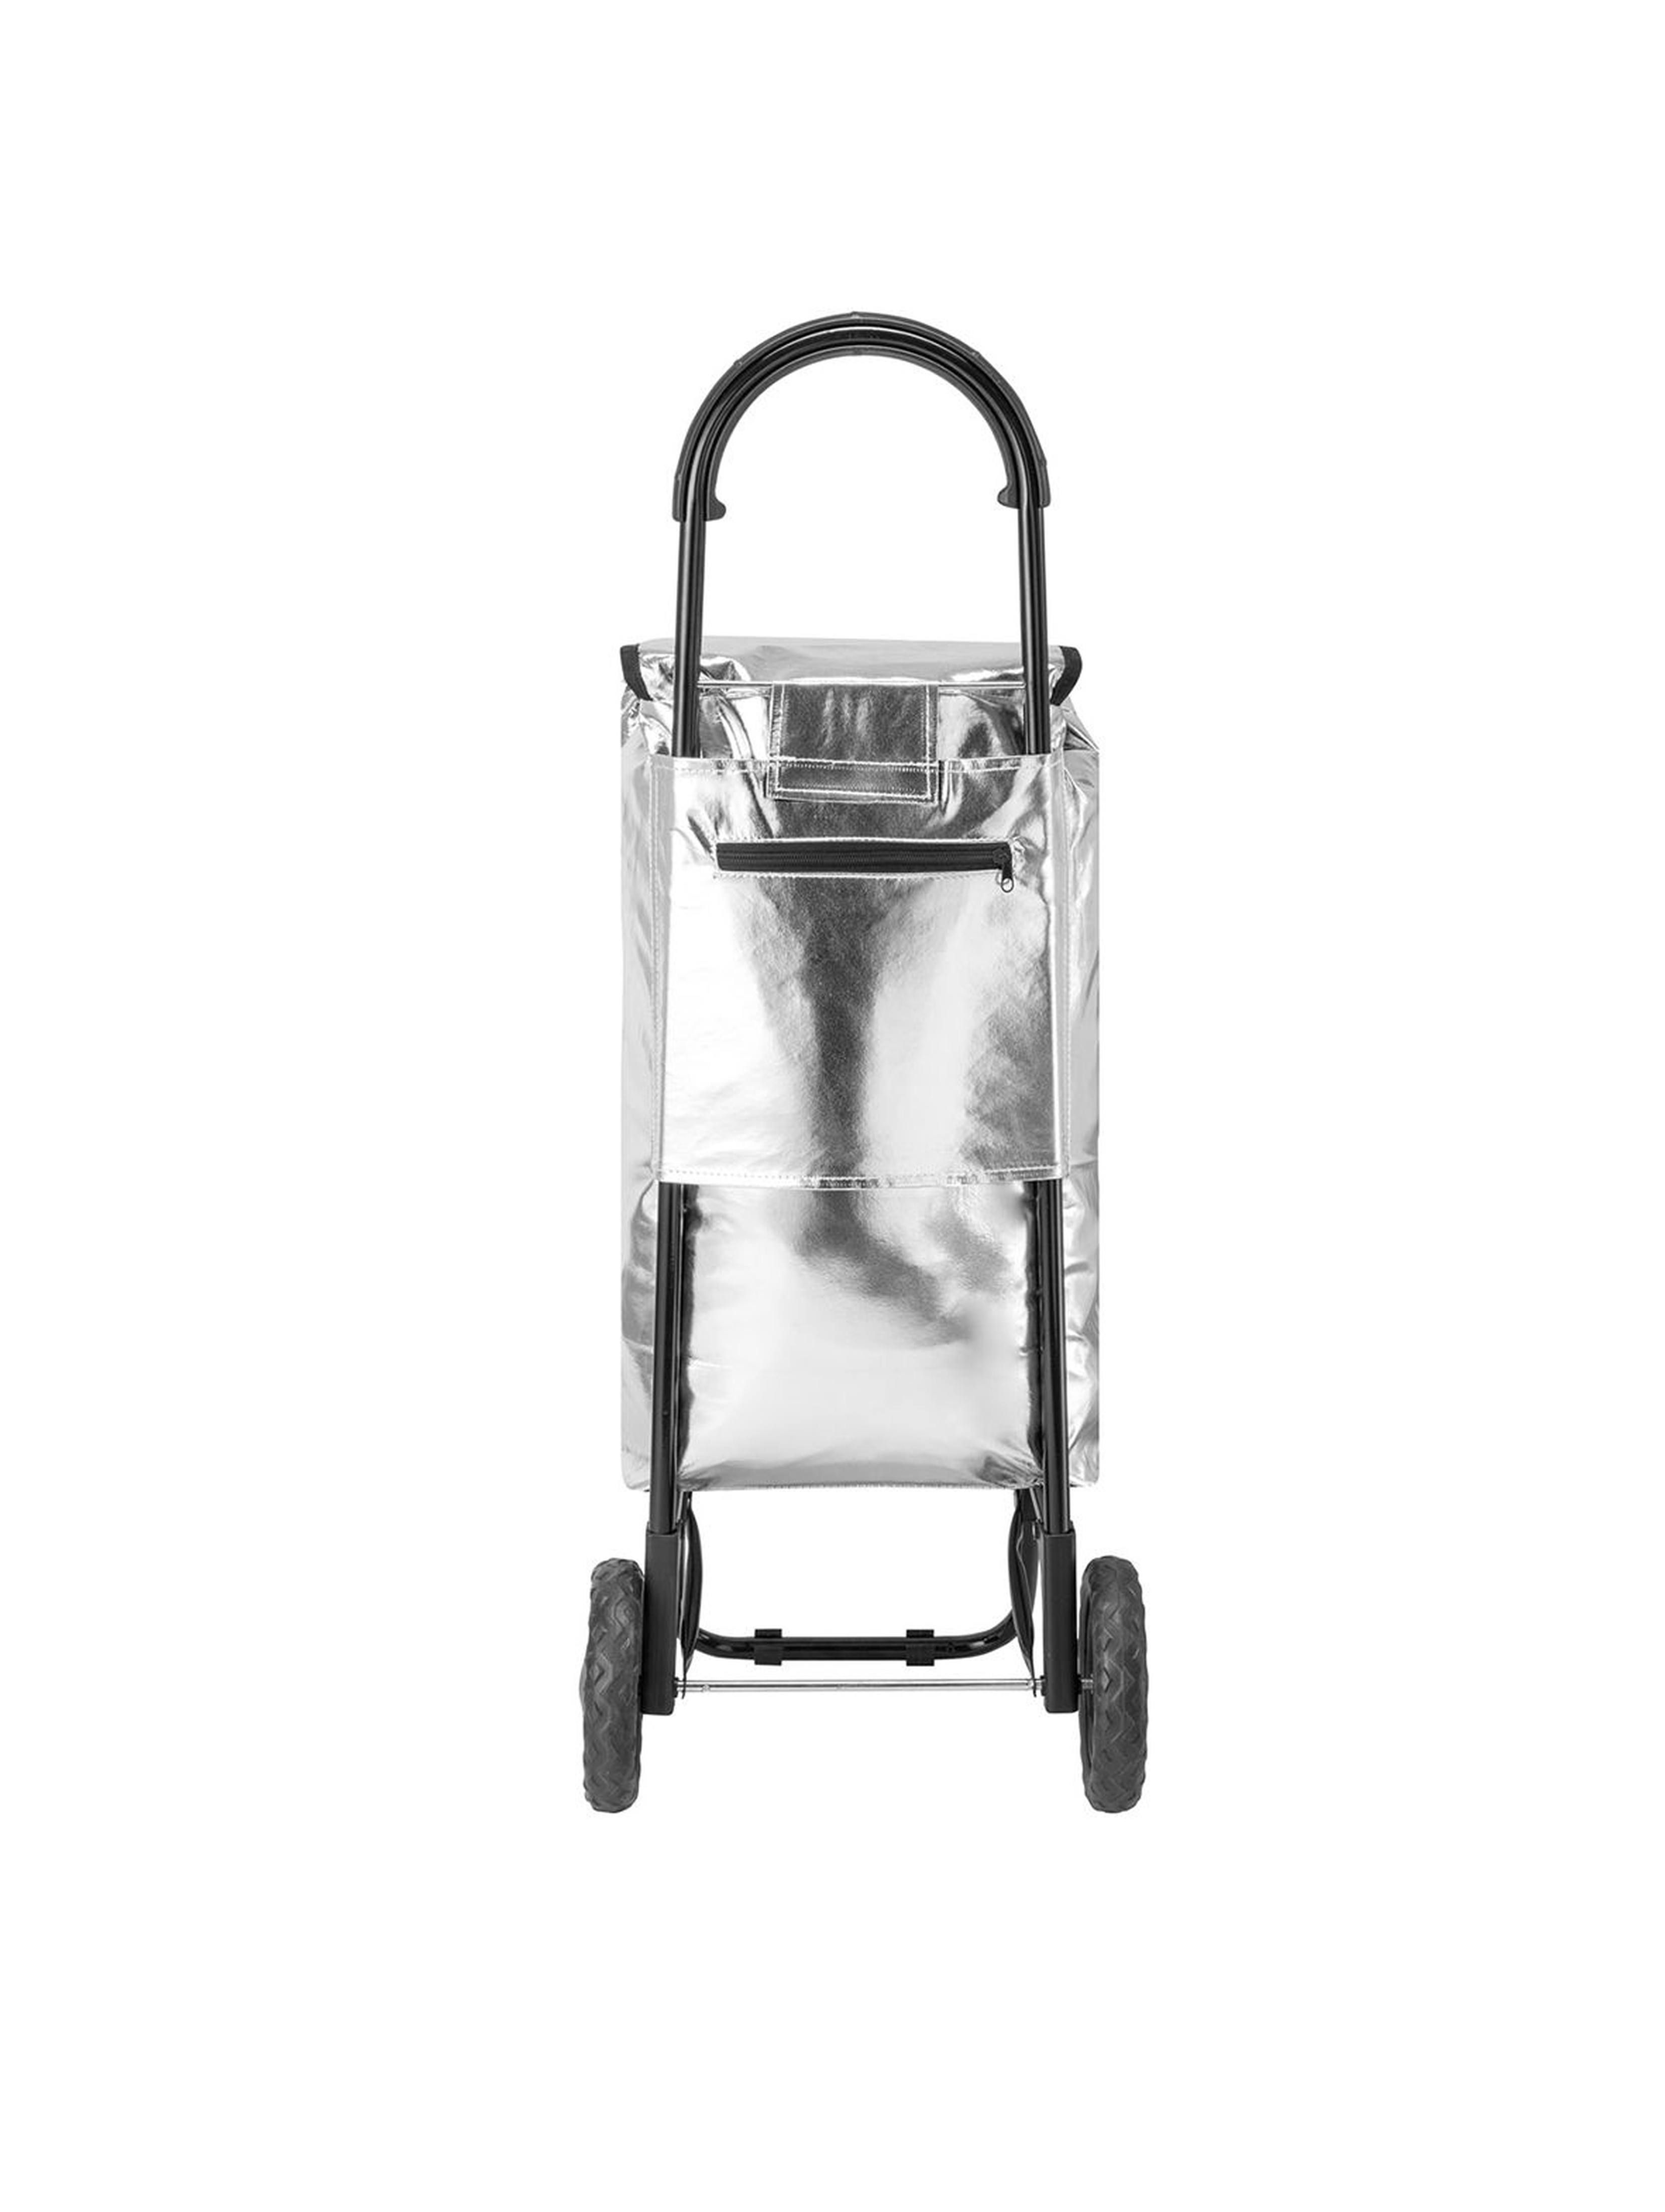 Wózek/torba za zakupy na kółkach Seria Fashion w kolorze srebrnym